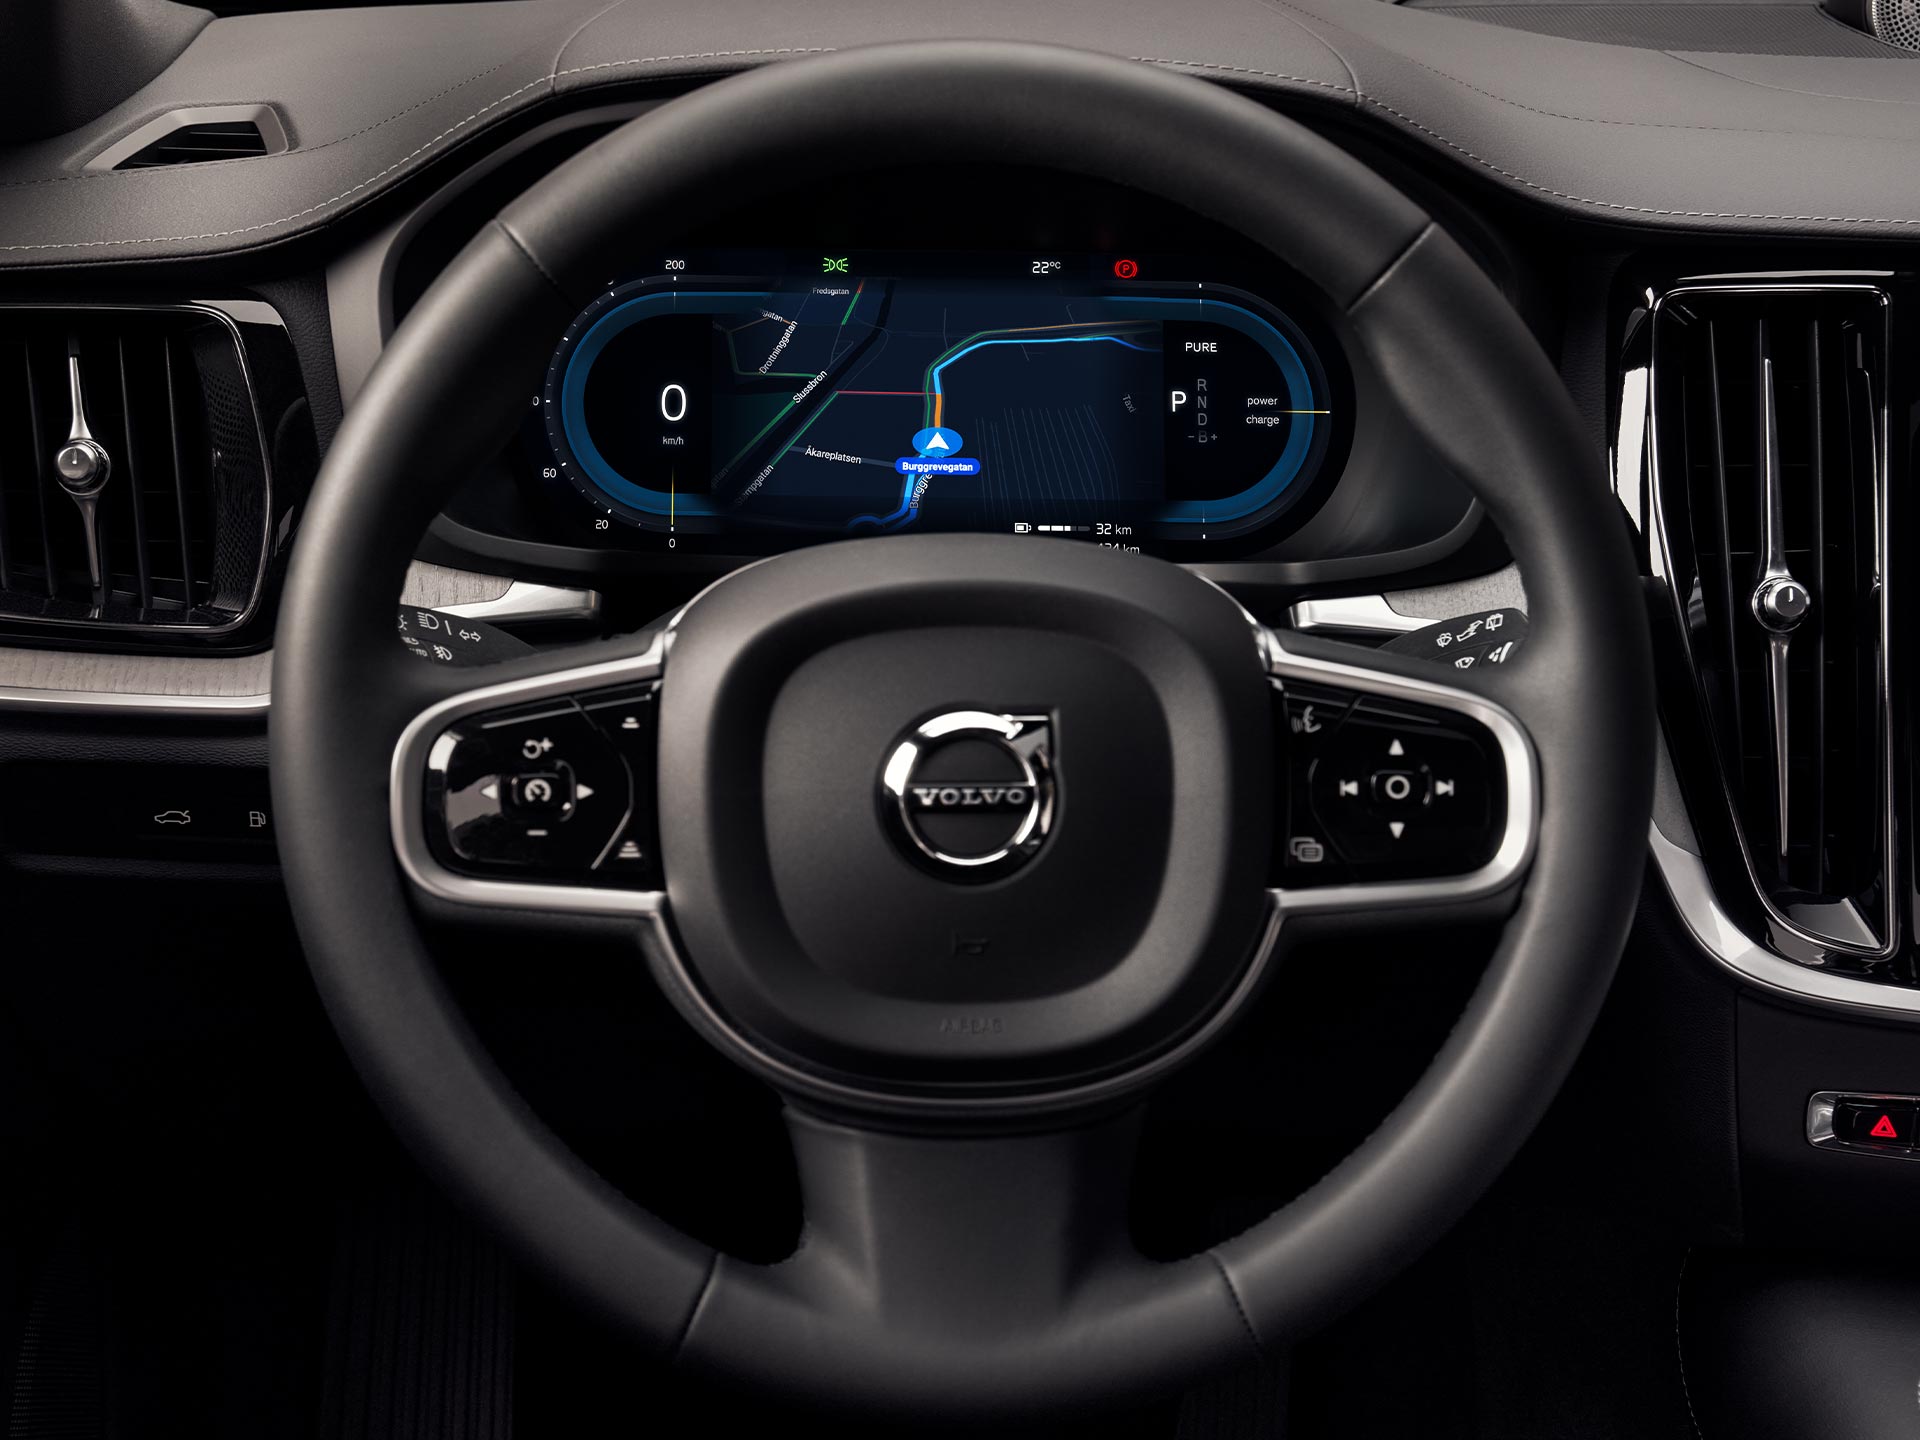 Displej komunikačního rozhraní řidiče ve voze Volvo S90.